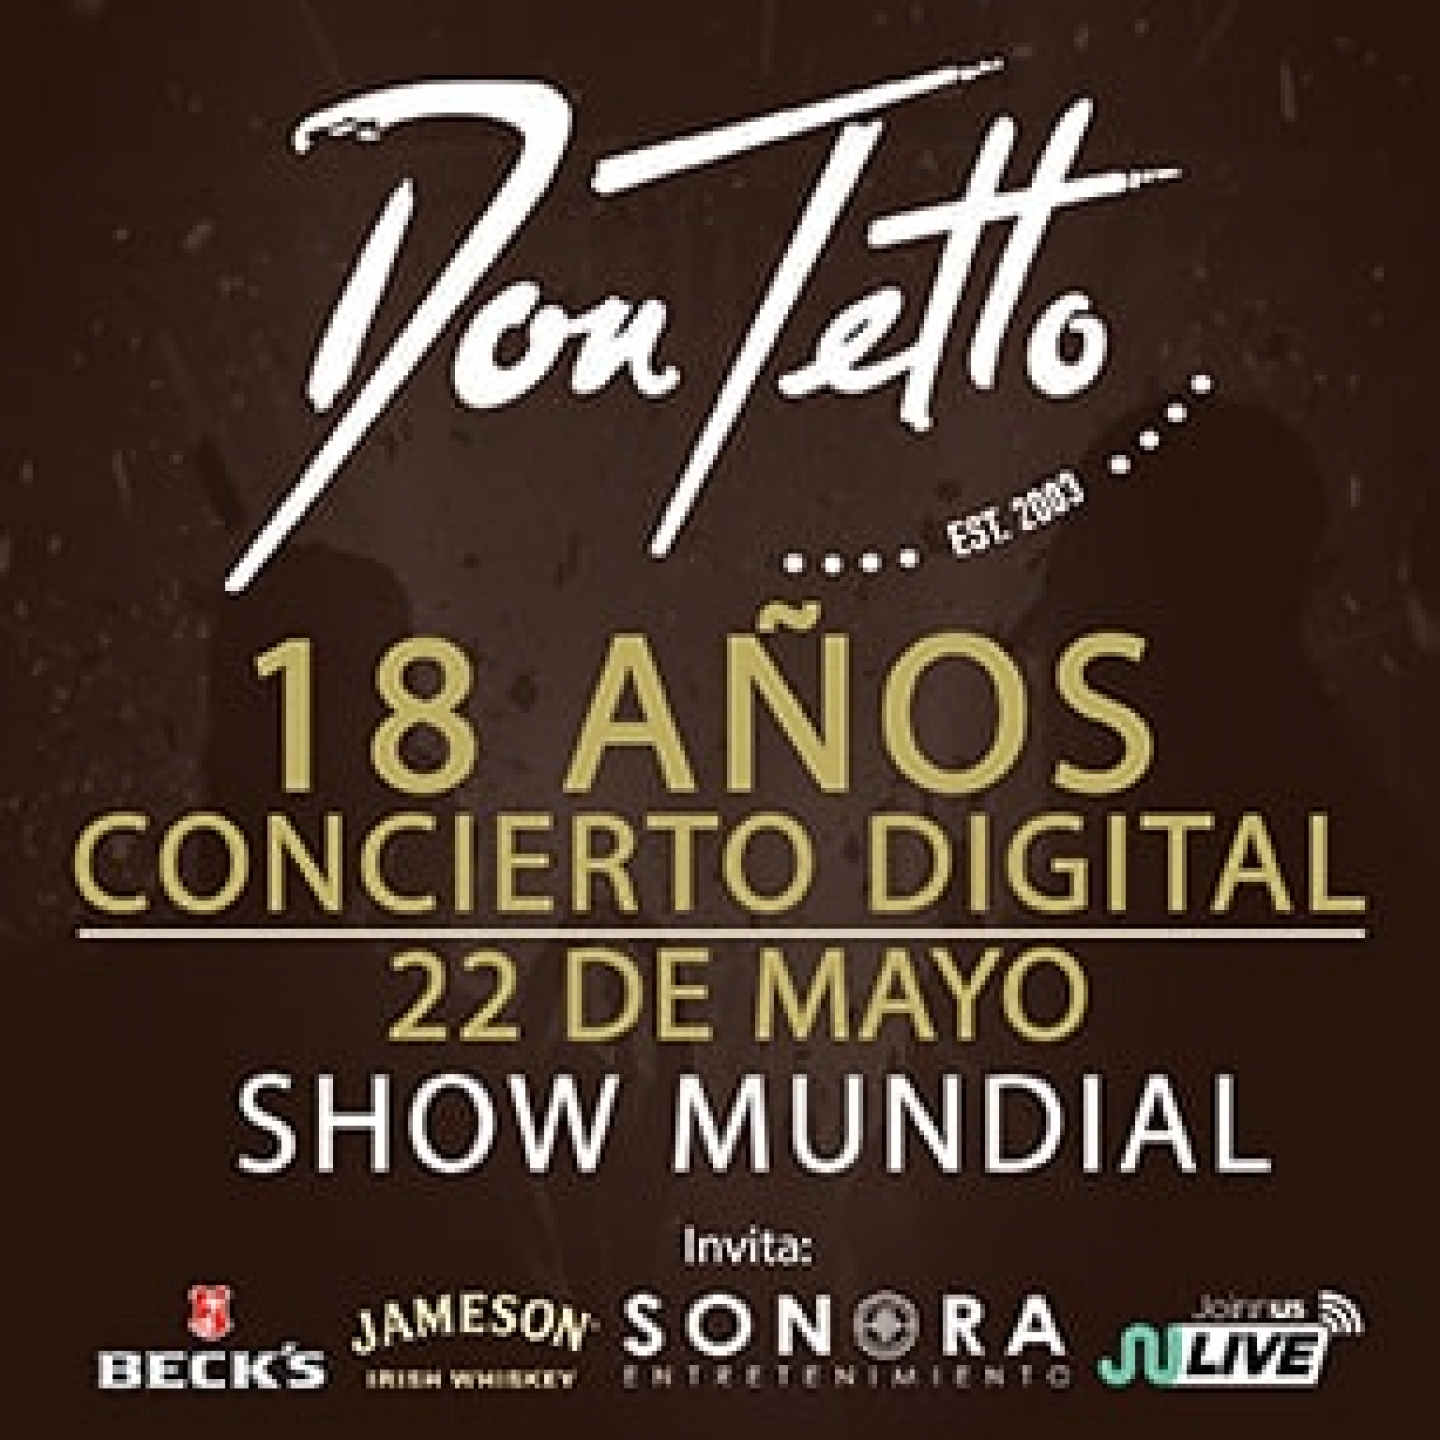 Únete a los 18 años de Don Tetto con su concierto virtual